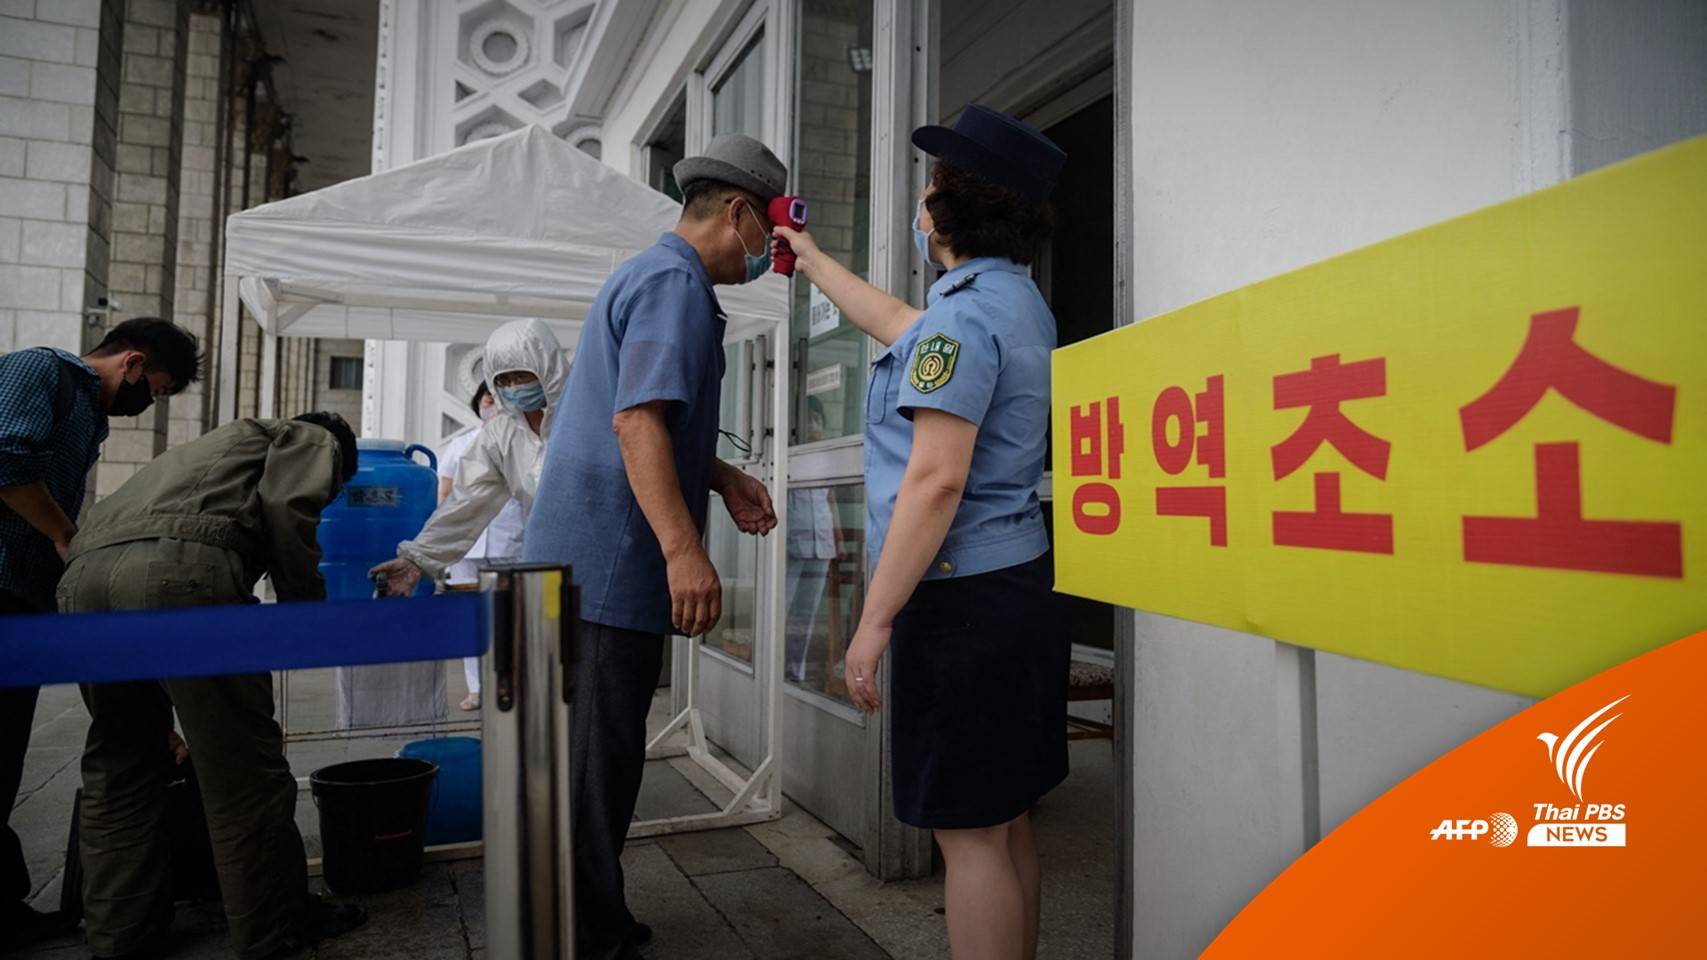 "เกาหลีเหนือ" พบมีอาการไข้ 1.48 ล้านคน เสียชีวิตรวมกว่า 50 คน